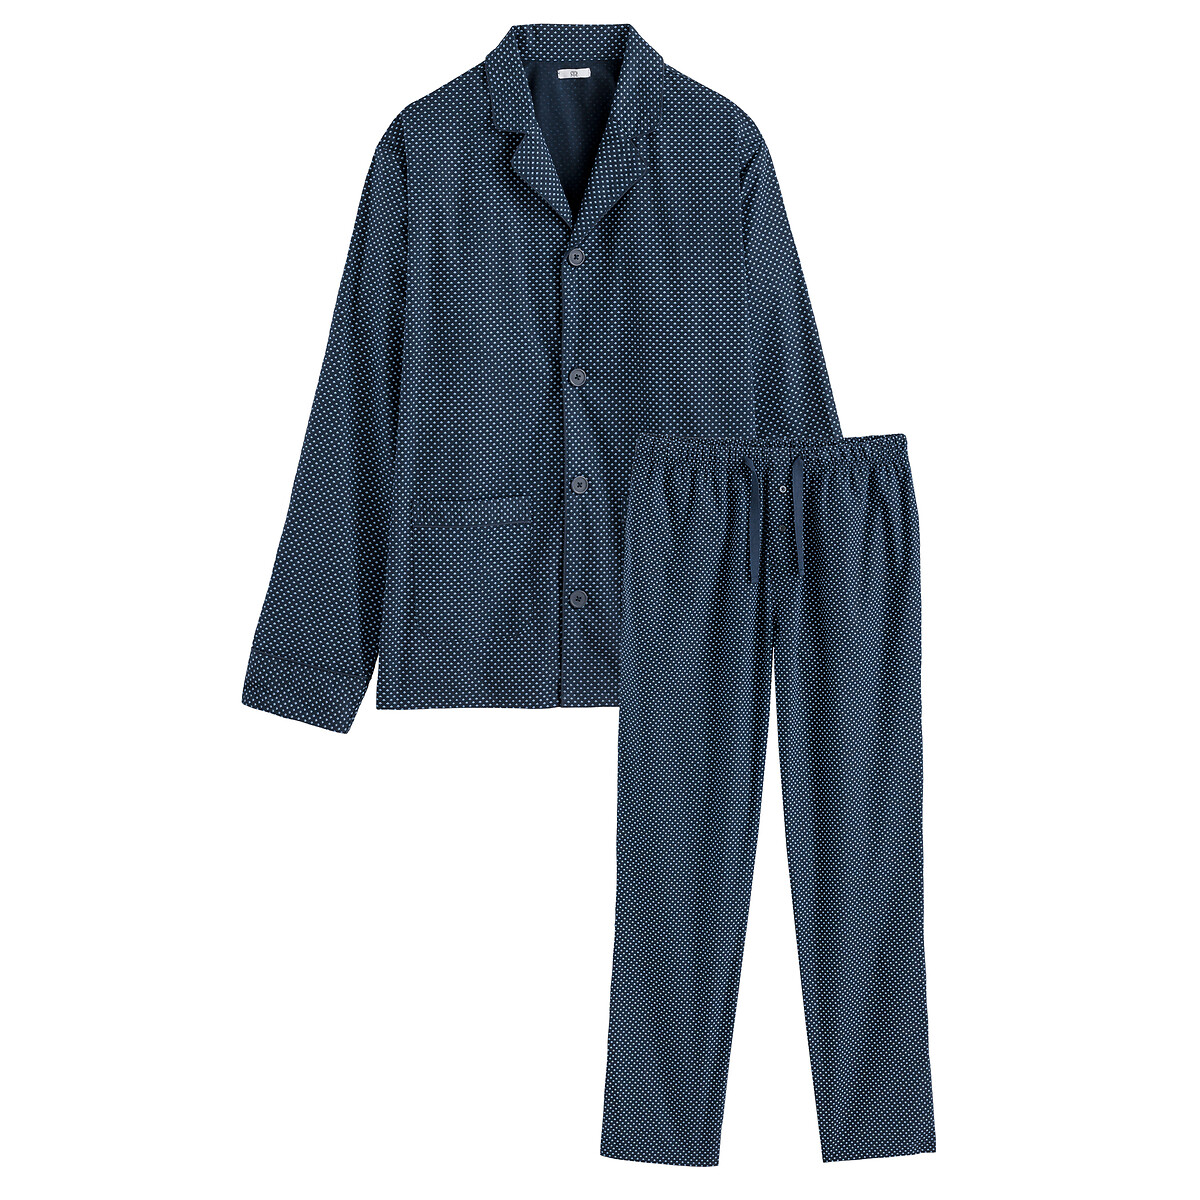 Пижама LA REDOUTE COLLECTIONS Пижама С принтом из биохлопка S синий, размер S - фото 5